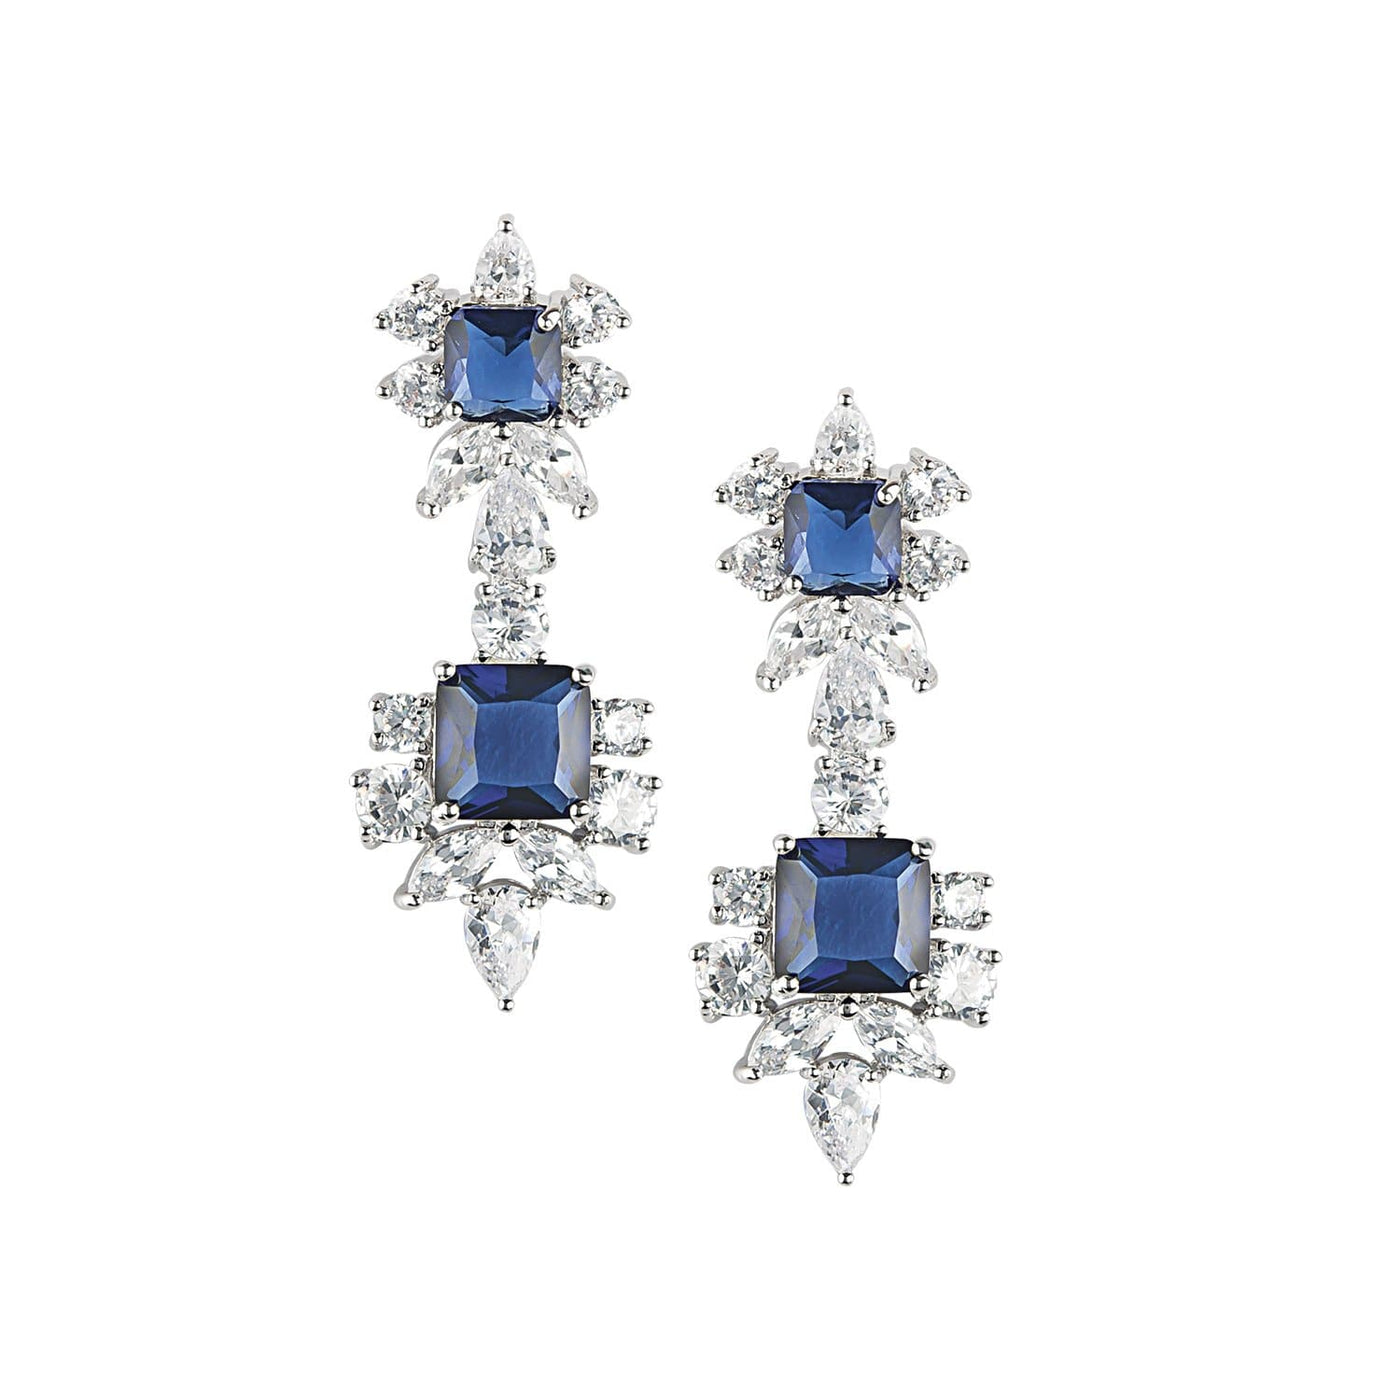 Daniel Steiger Chateau Blu Earrings